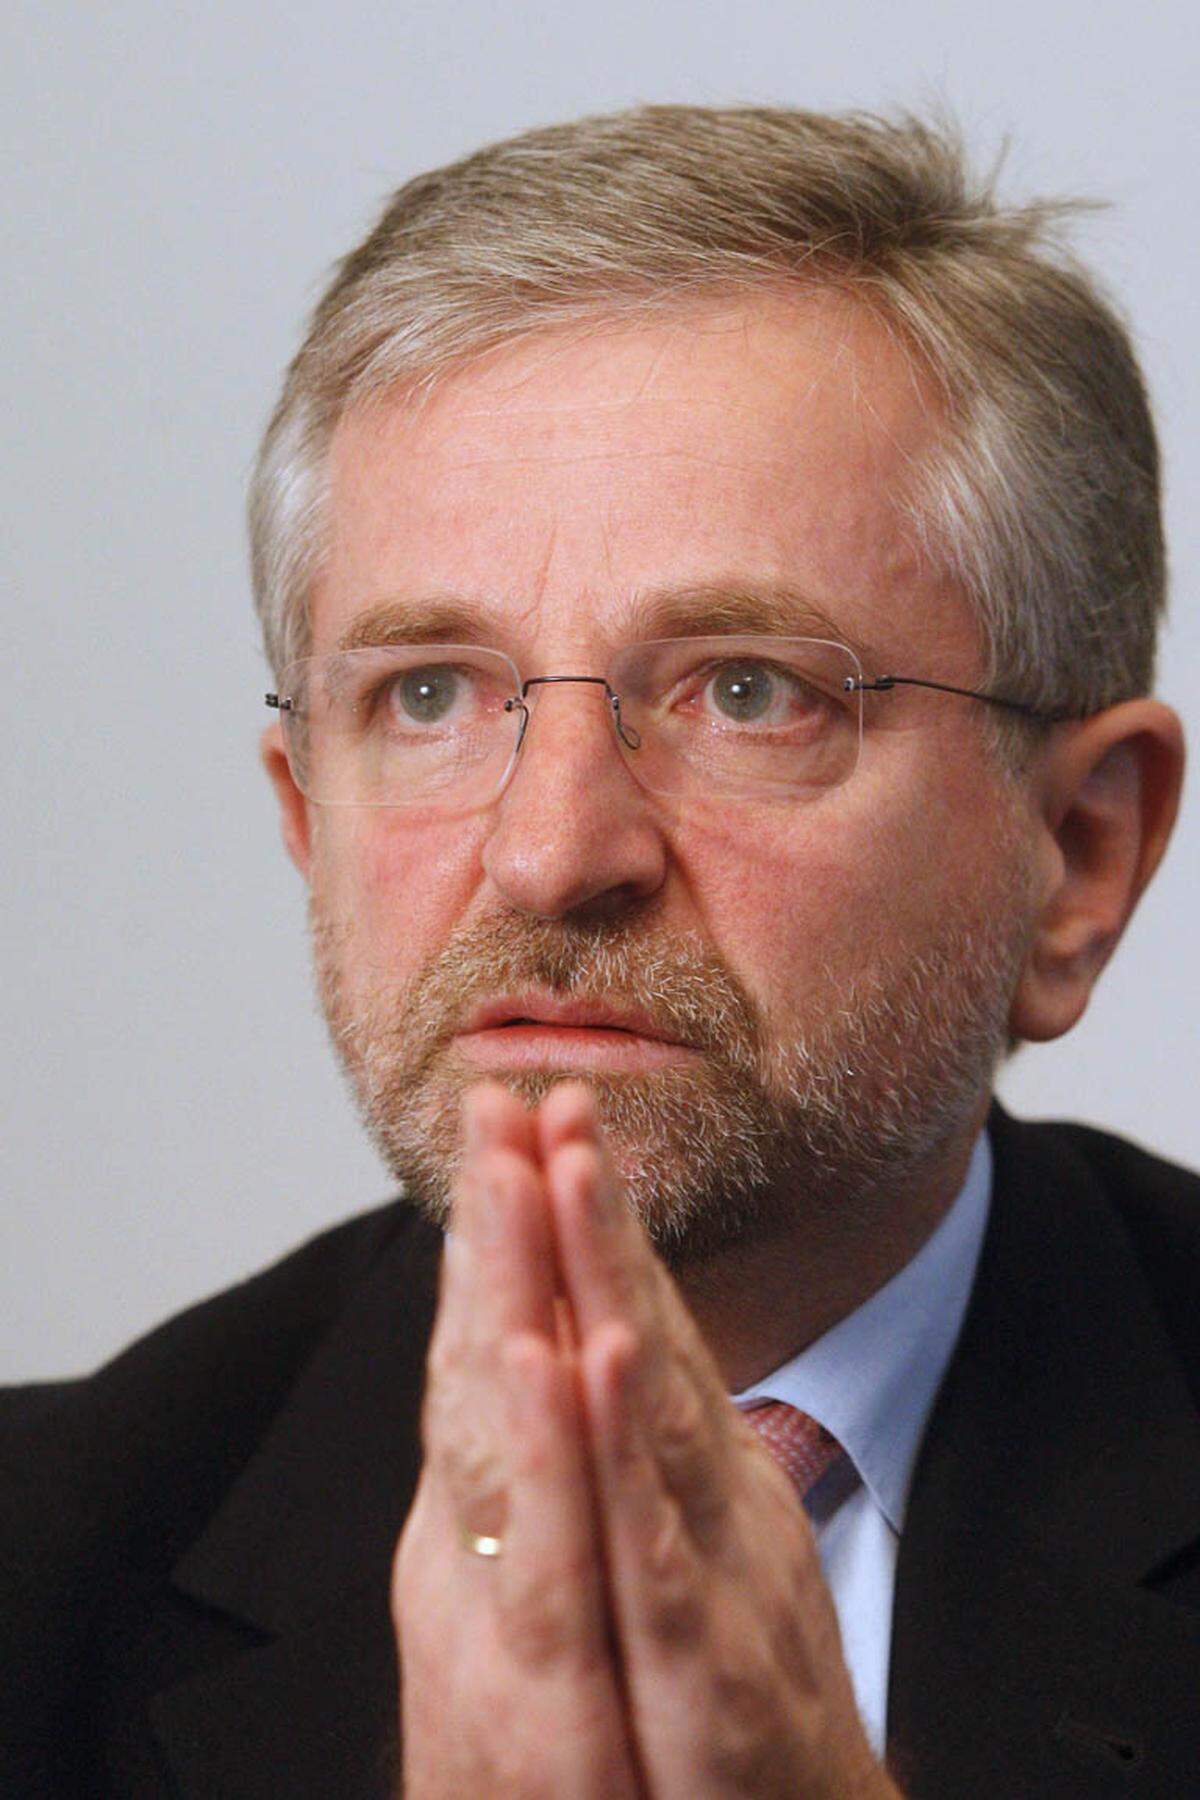 Molterer, der die Nationalratswahl 2008 vom Zaun gebrochen und verloren hat, ist erst vor einem Monat aus dem Parlament ausgeschieden und wechselt als Vizechef zur Europäischen Investitionsbank (EIB).